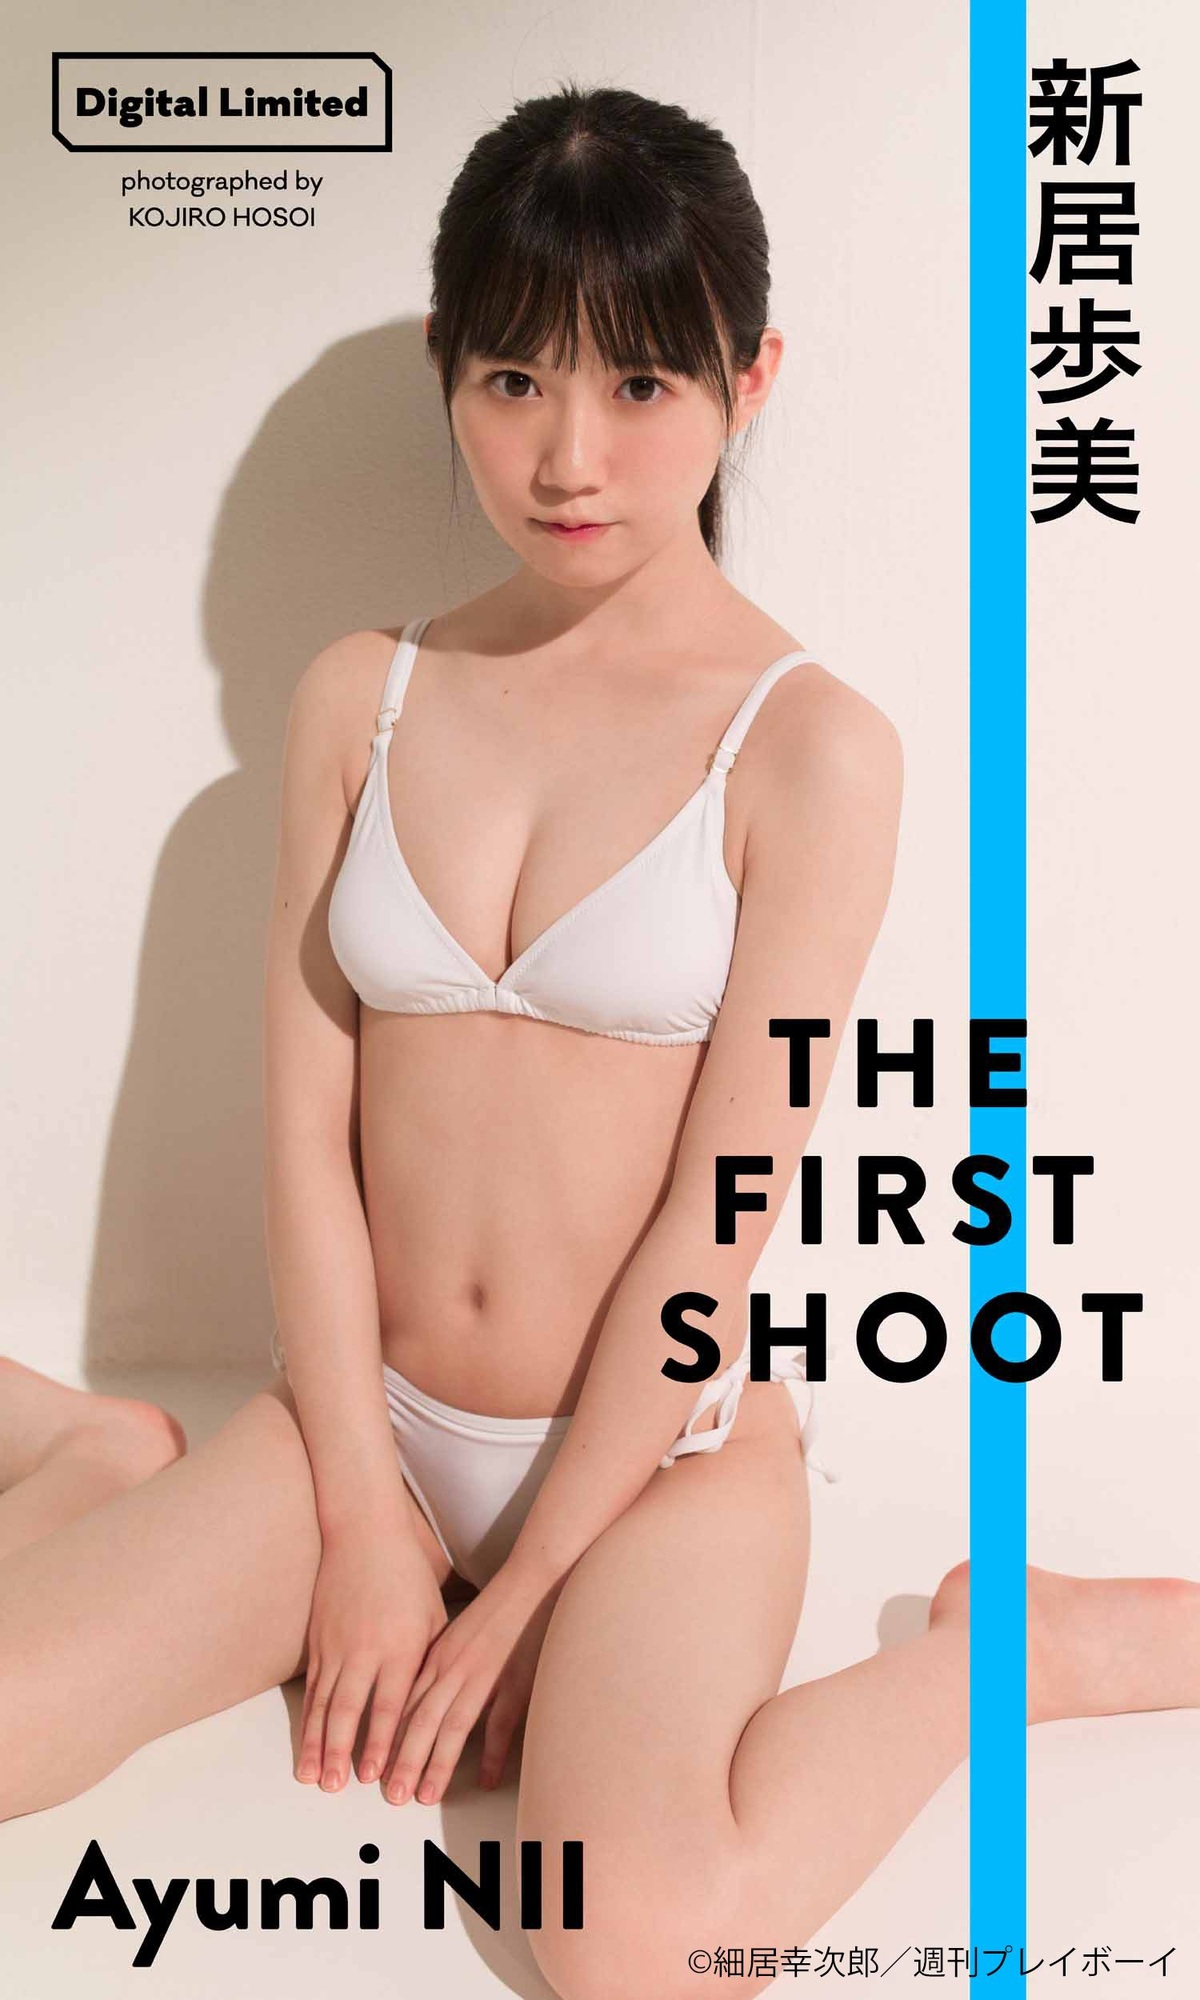 Ayumi Nii 新居歩美, Weekly Playboy 2021 No.45 (週刊プレイボーイ 2021年45号)